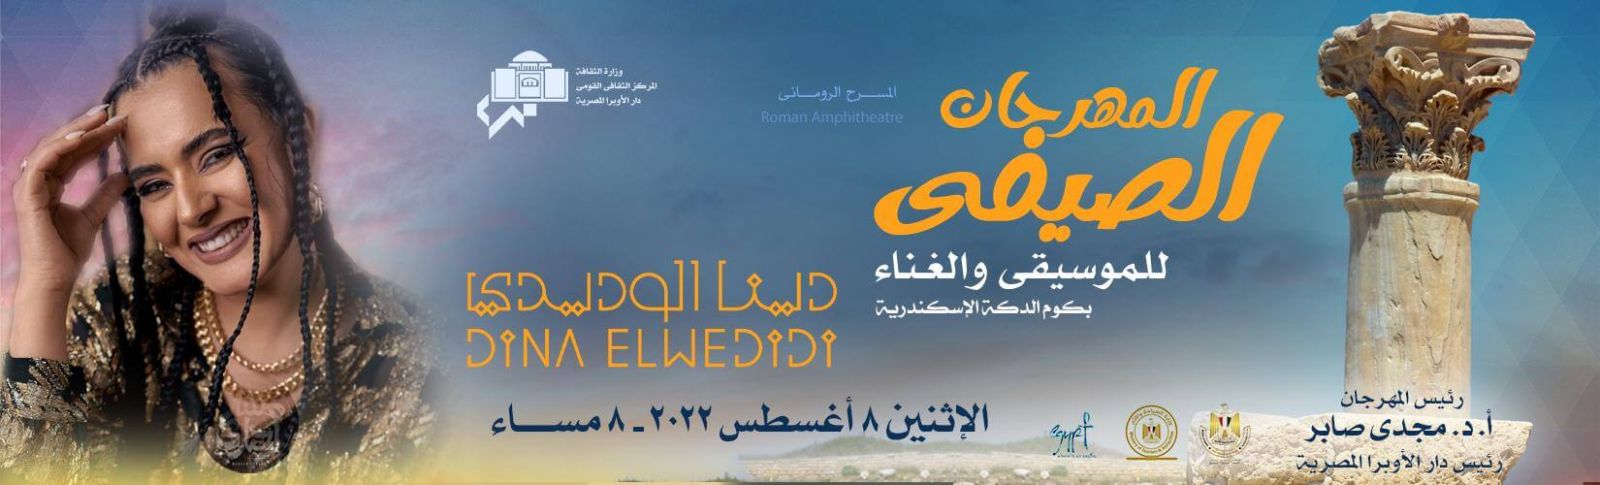 دينا الوديدي في المهرجان الصيفي بالإسكندرية غدًا